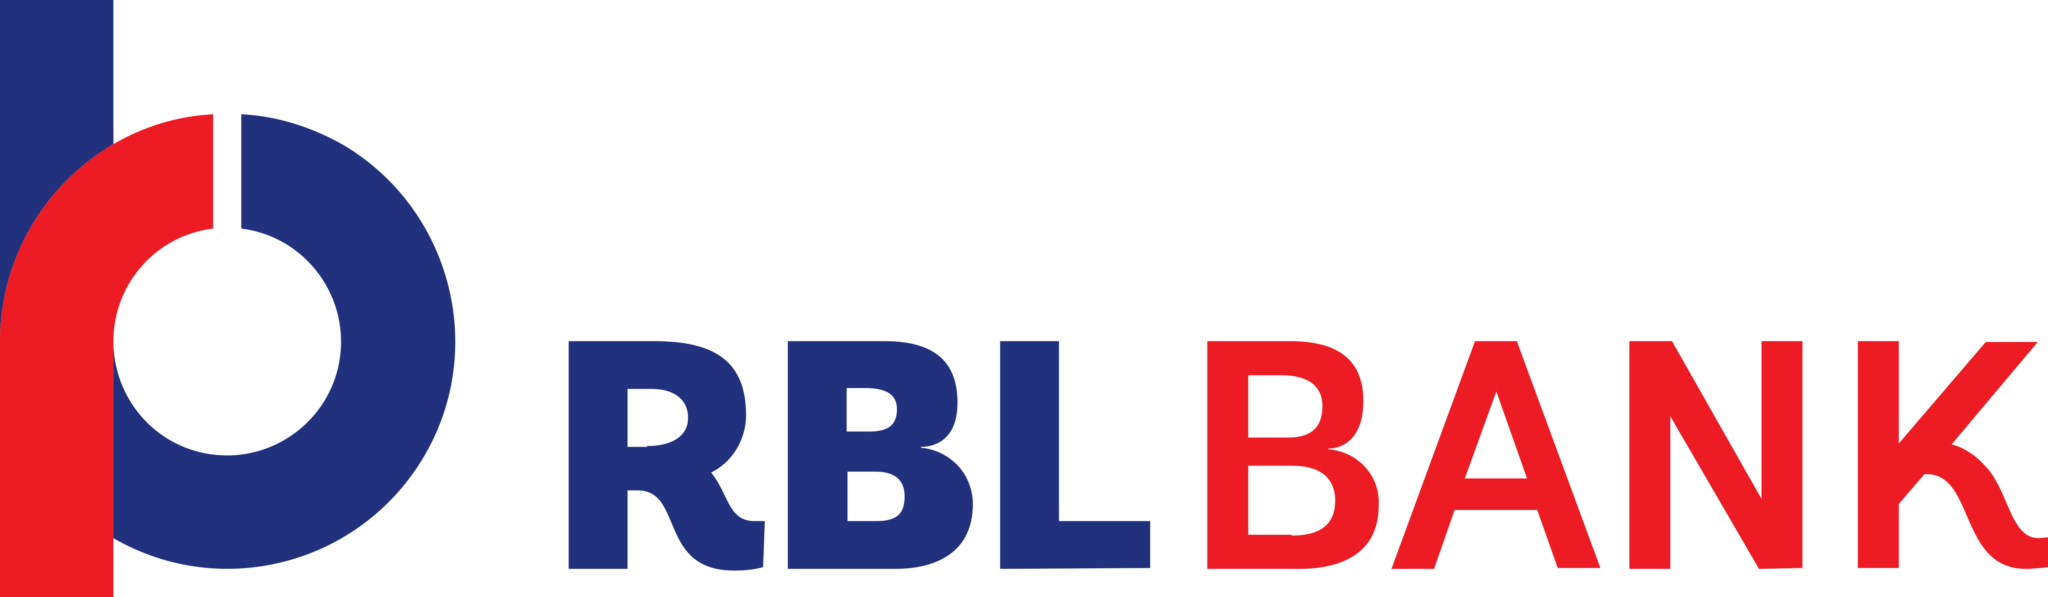 Банки логотипы png. RBL Bank. Банки эмблемы. Банк лого. ББР банк логотип.